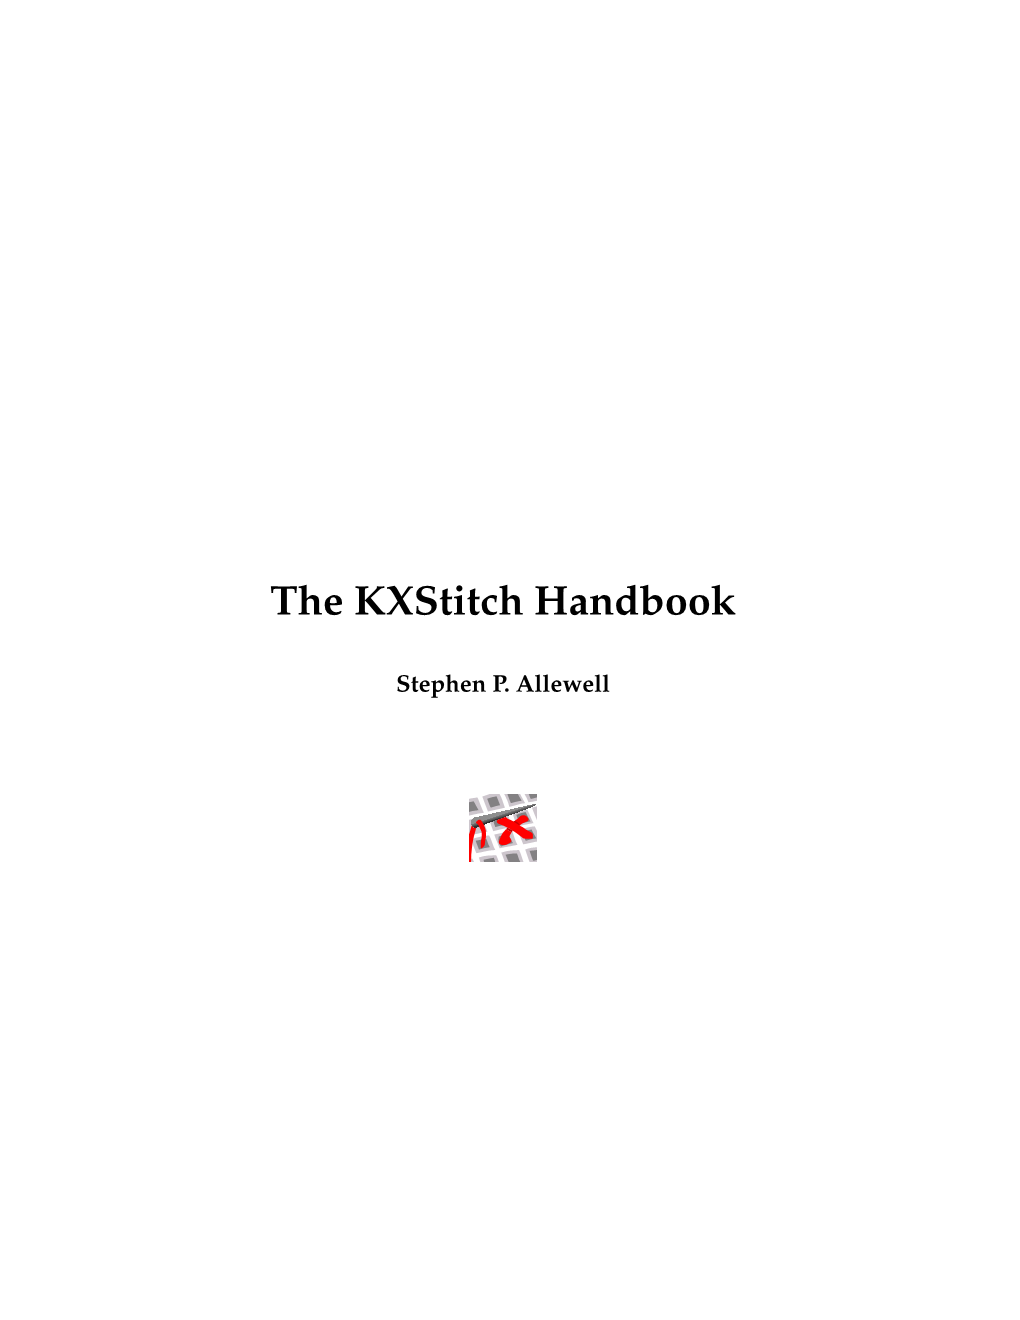 The Kxstitch Handbook